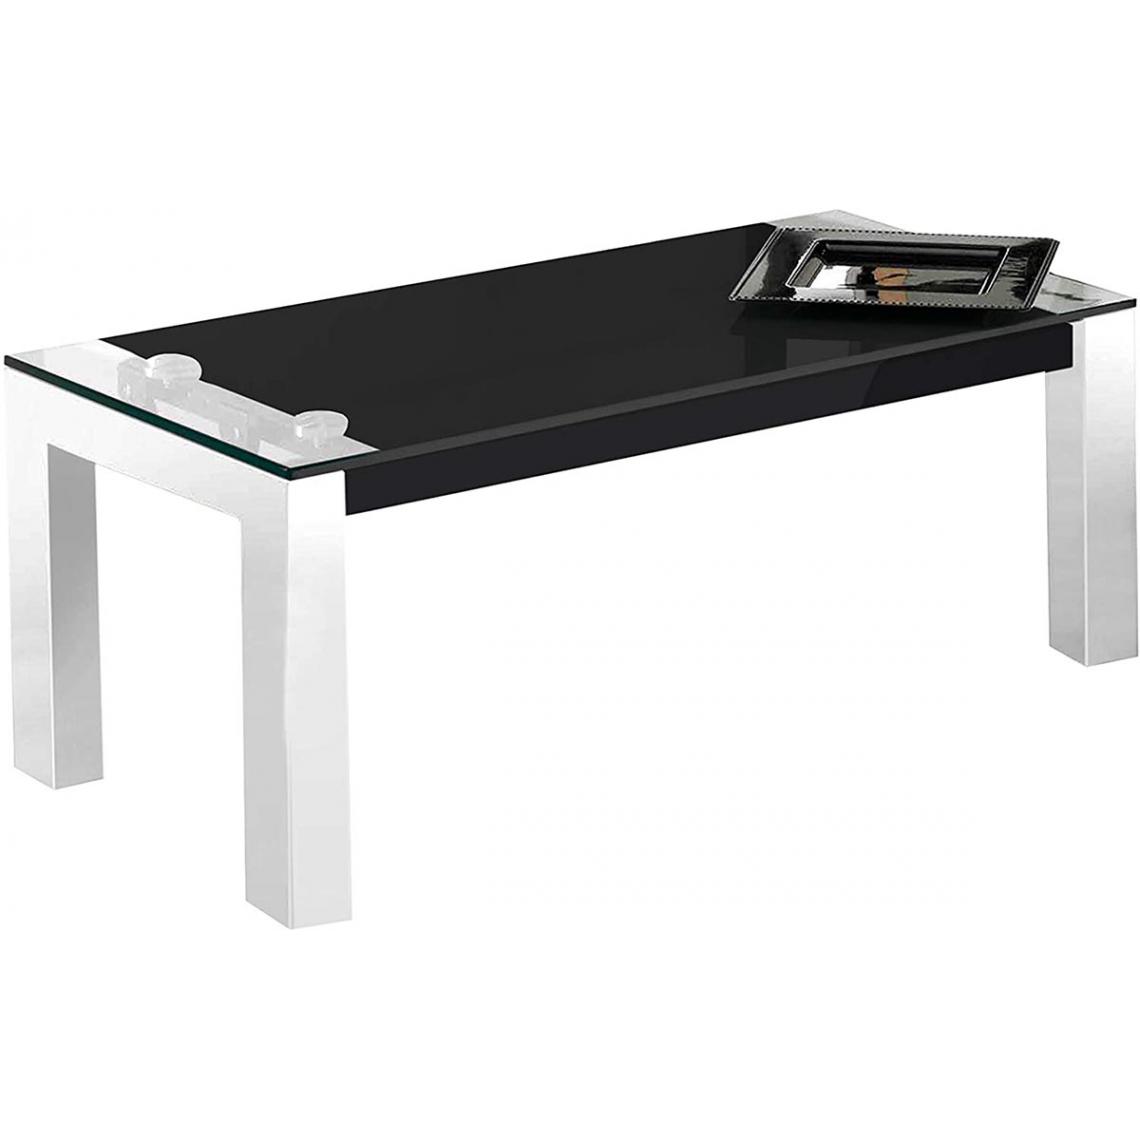 Pegane - Table basse relevable en verre trempé coloris noir - Longueur 112 x profondeur 50 x hauteur 44 - 57 cm - Tables basses